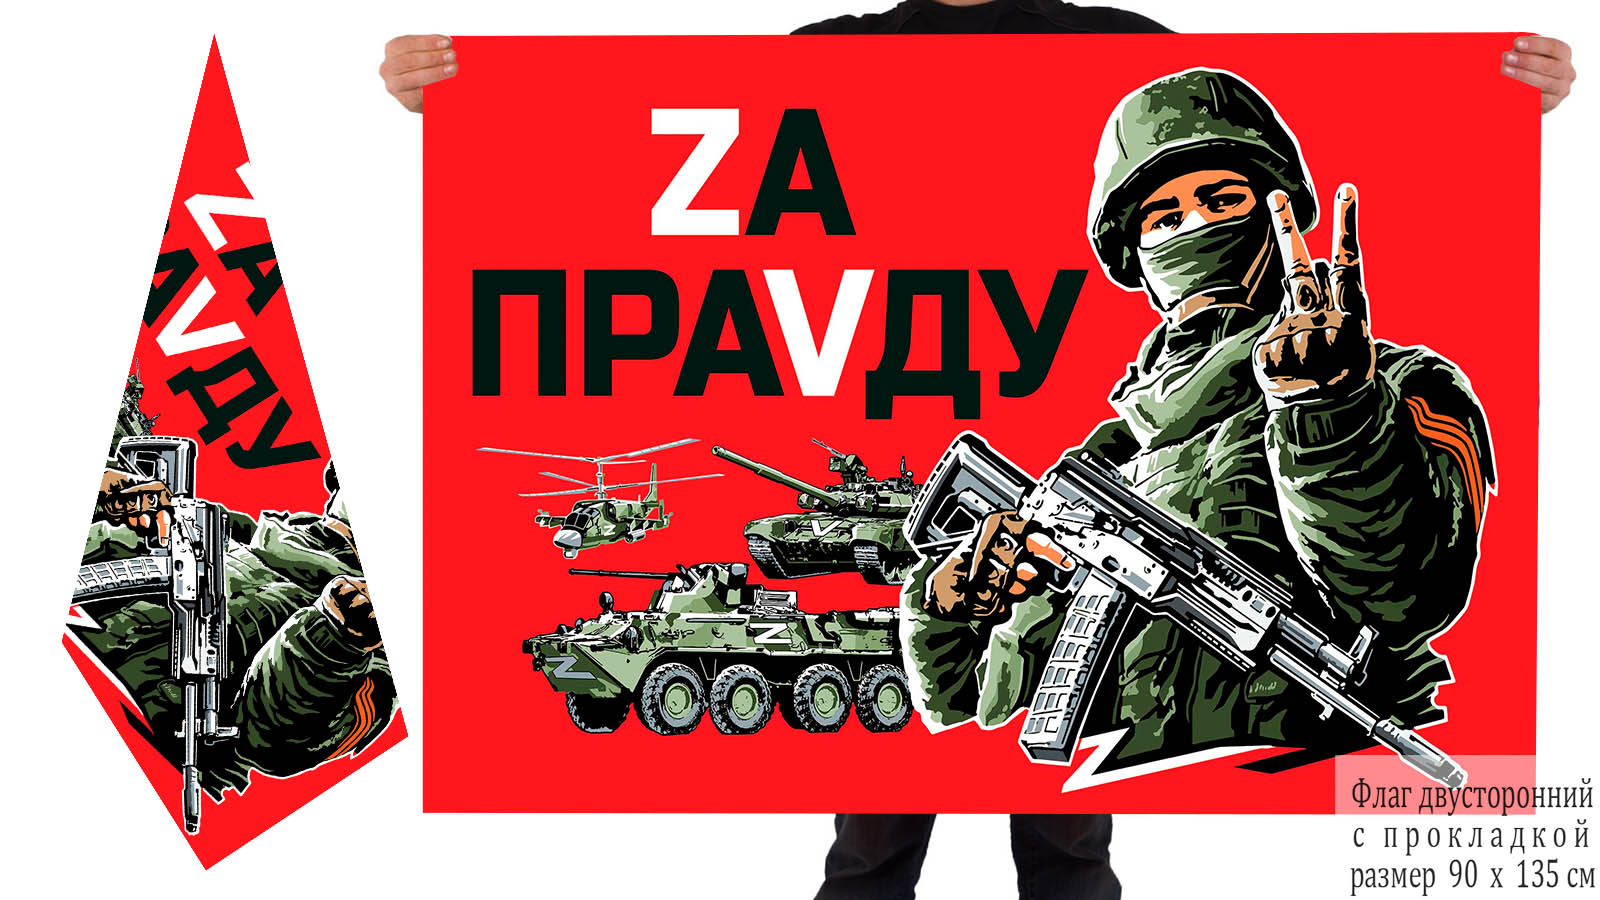 Двусторонний флаг с надписью "Zа праVду"